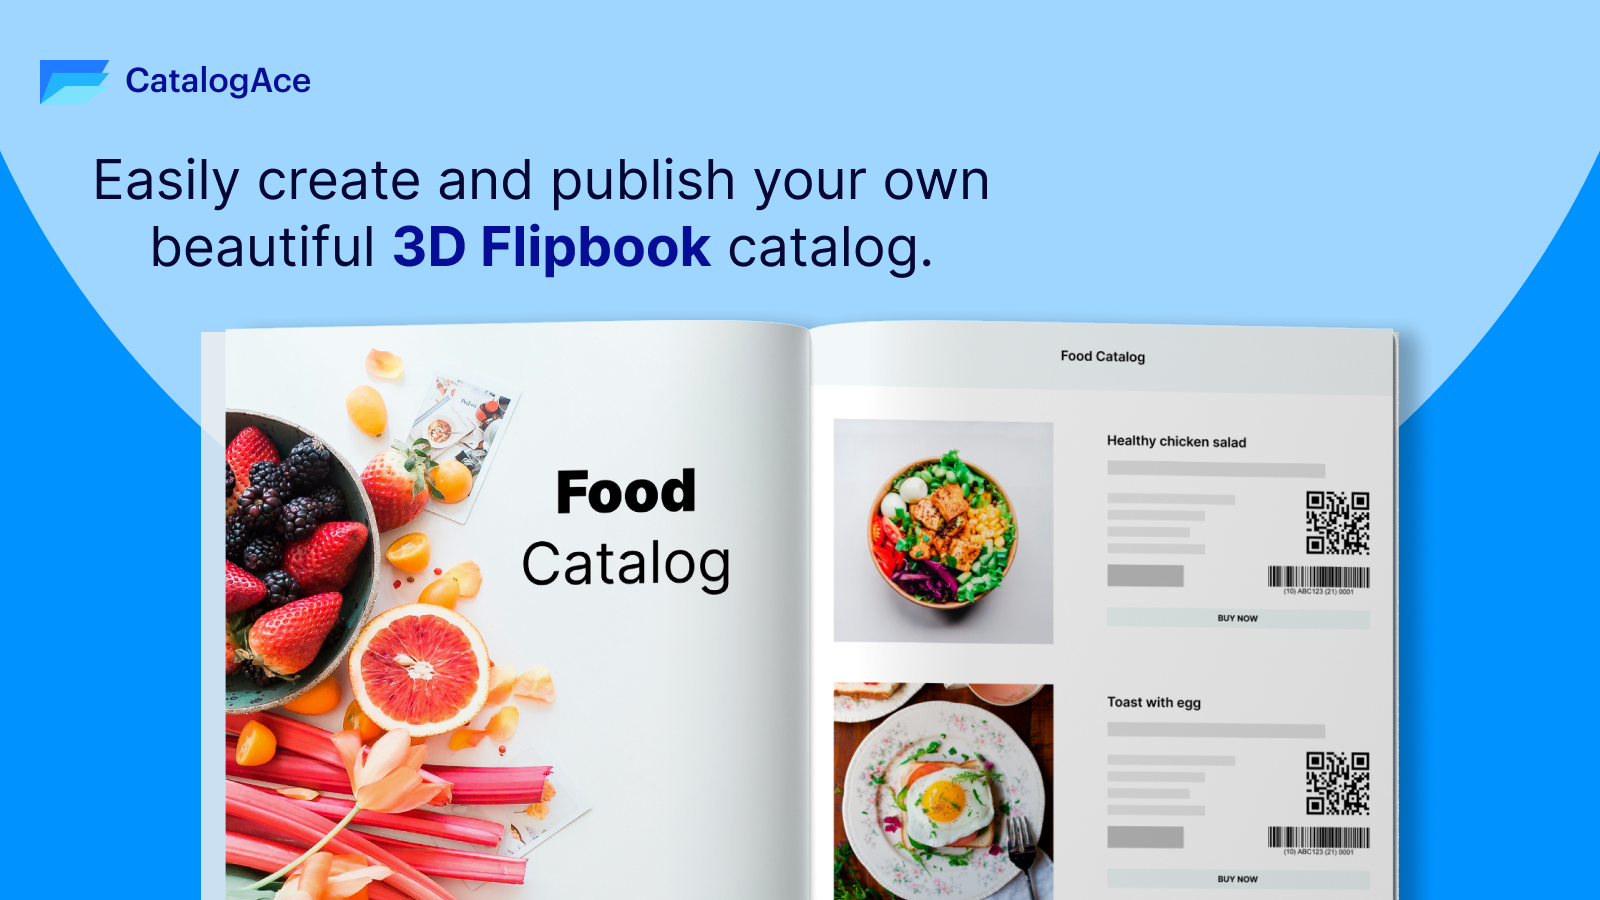 Créez et publiez facilement votre propre beau Flipbook 3D